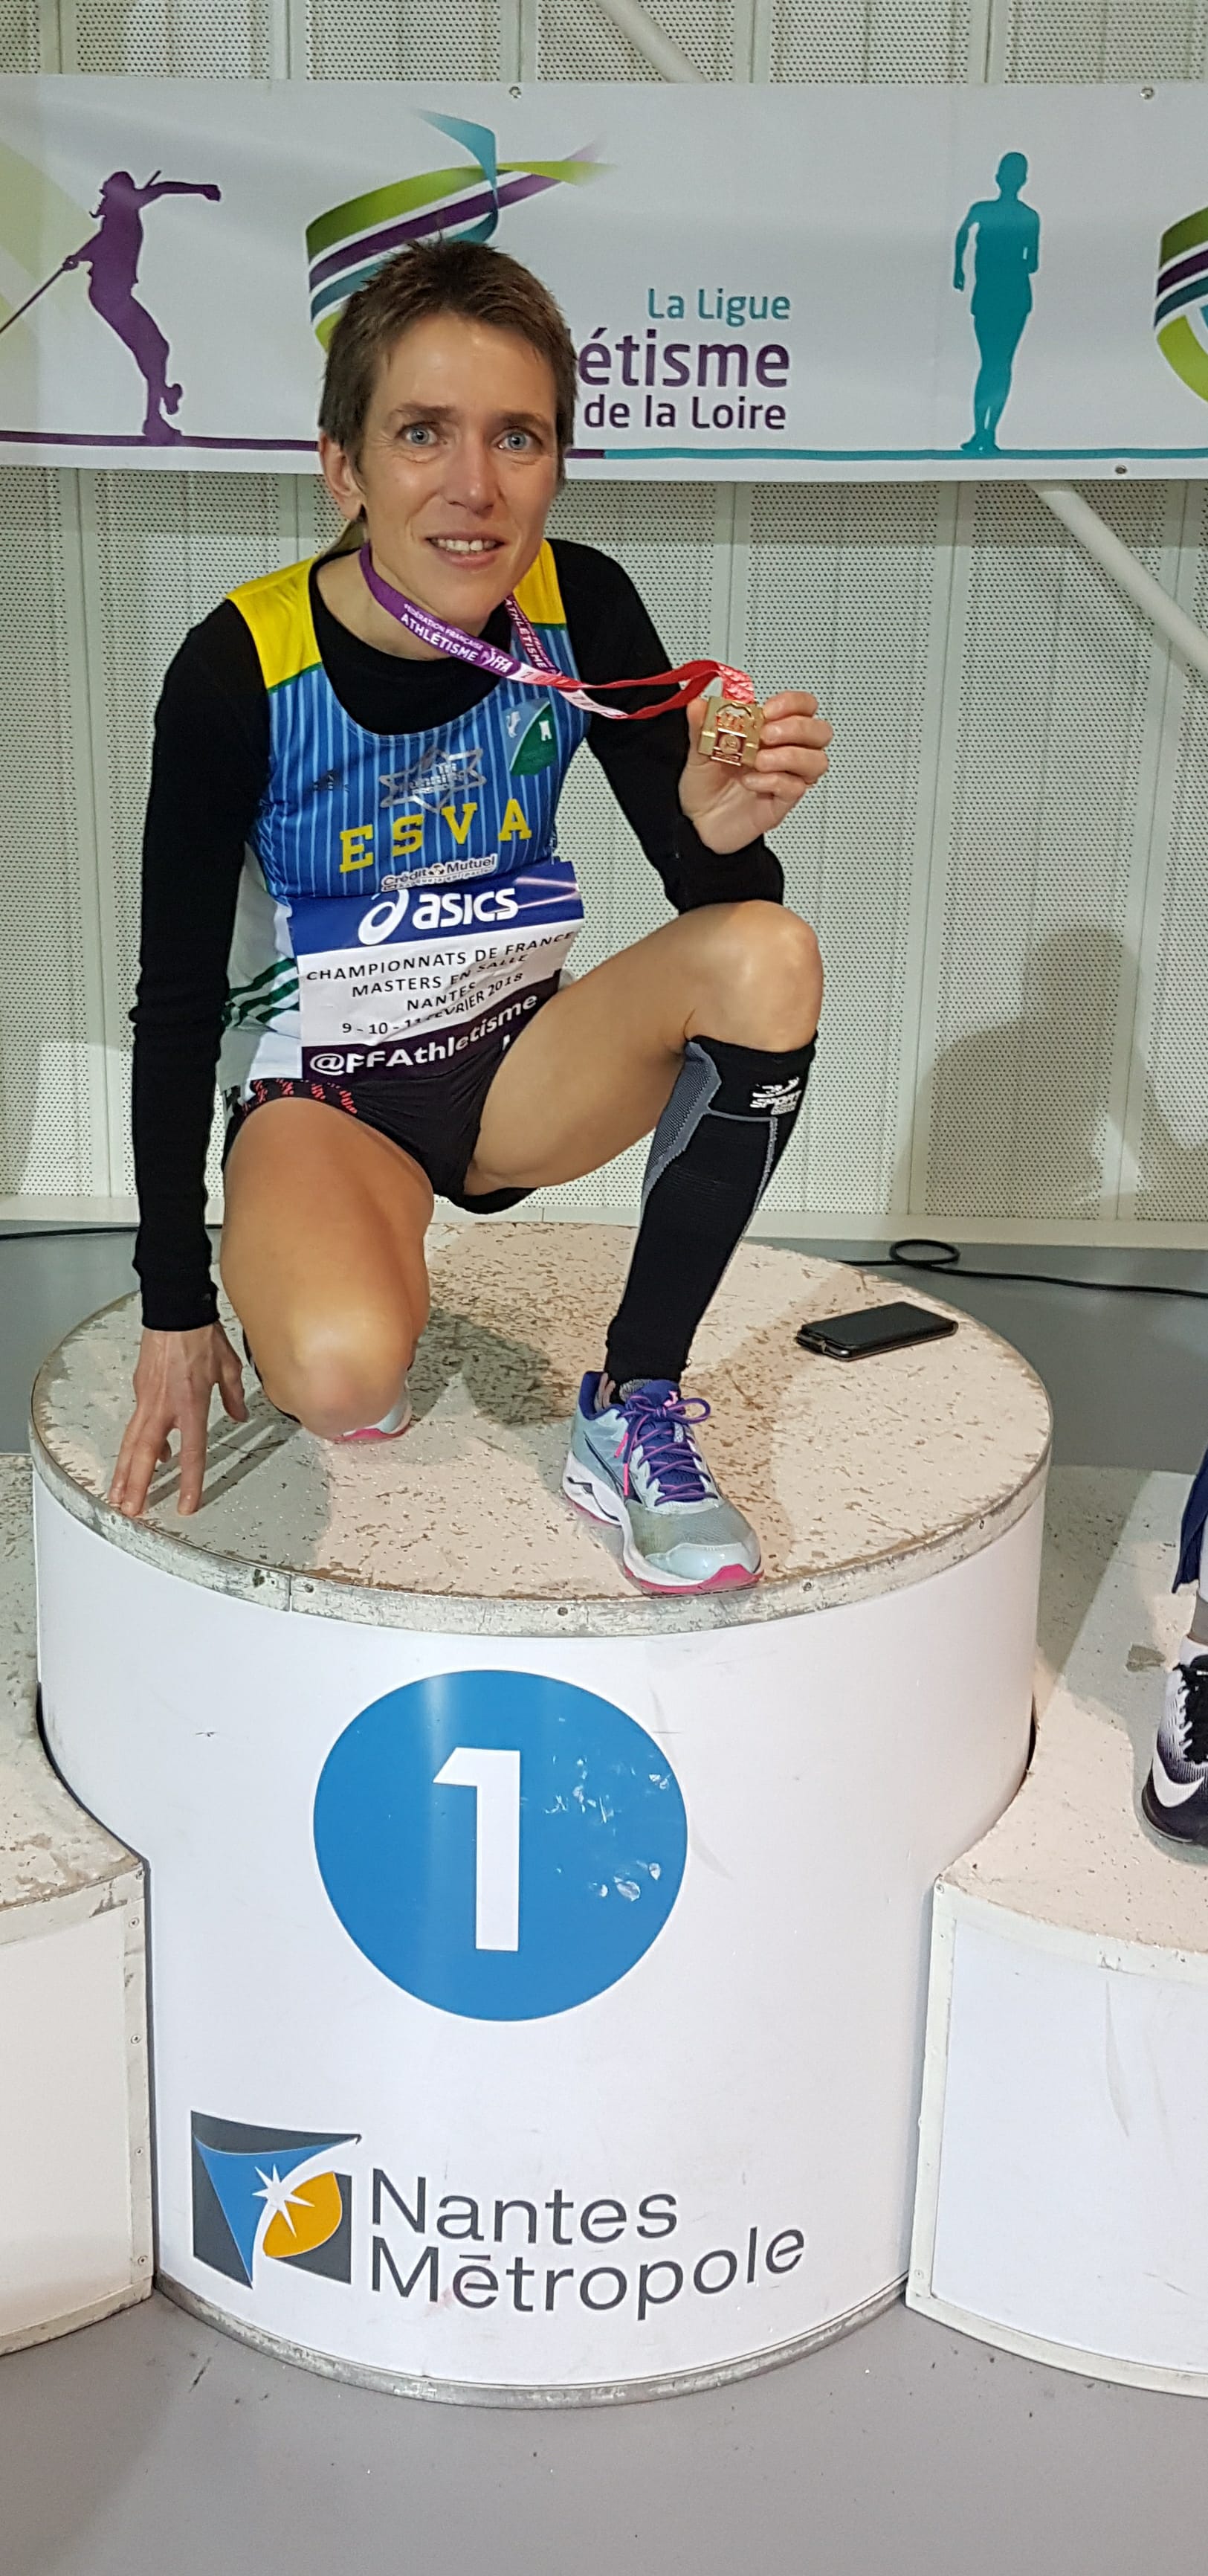 Catherine THOMAS-PESQUEUX avec sa médaille de championne de France Master aux 3000 mètres en salle, à Nantes.